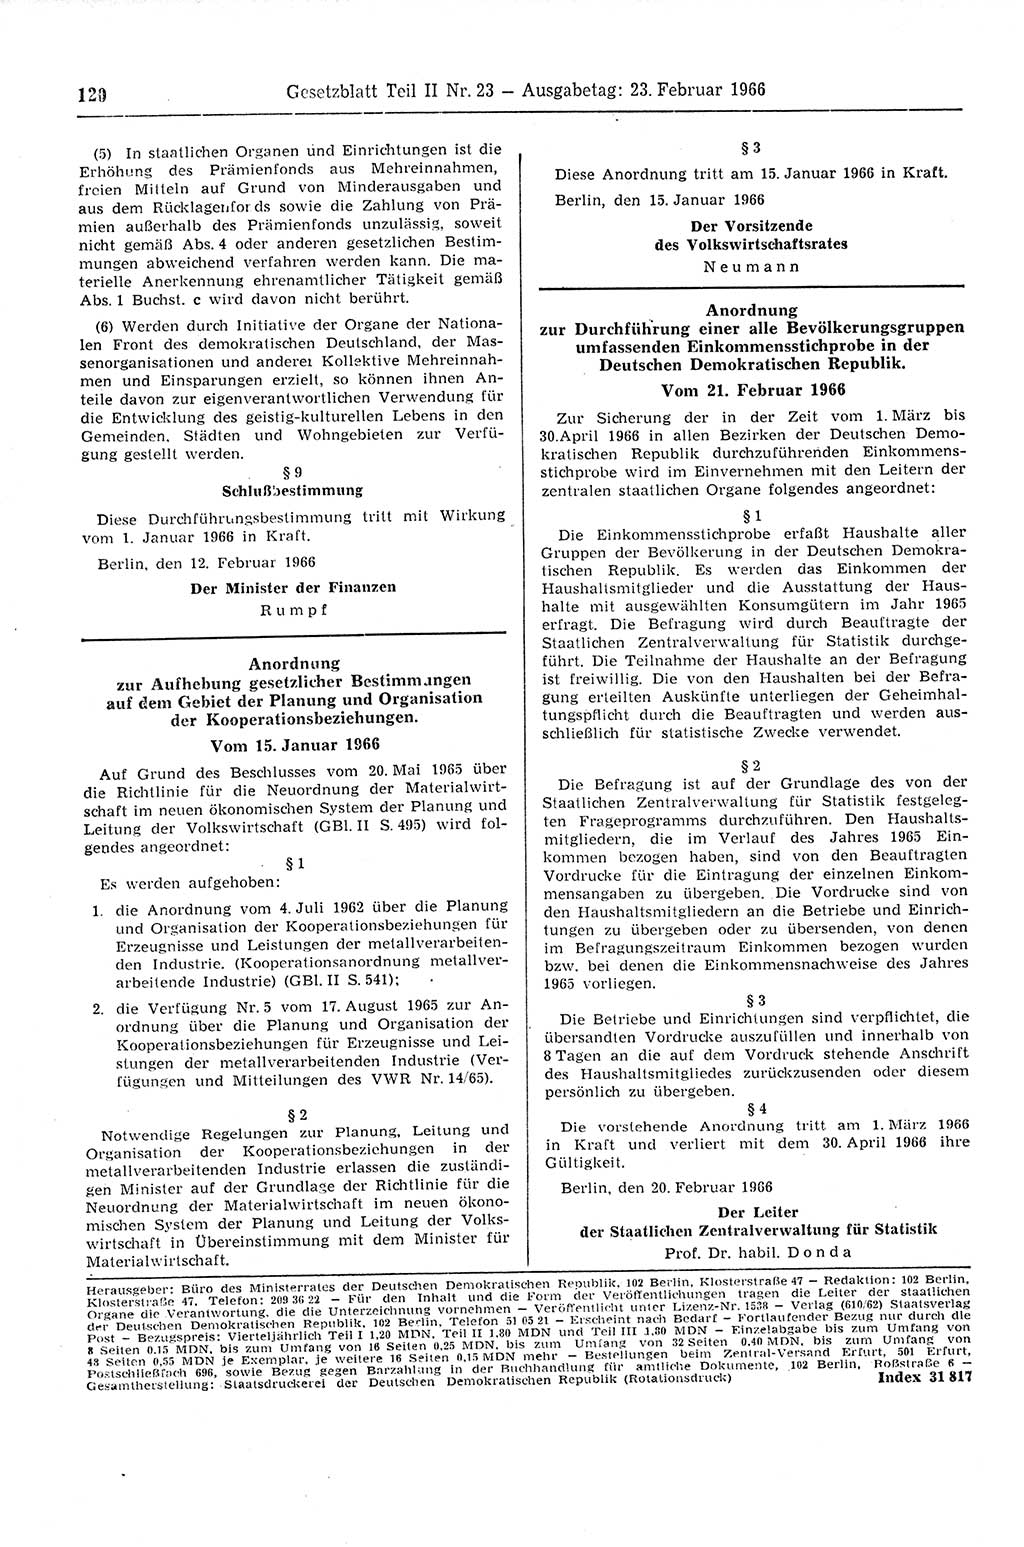 Gesetzblatt (GBl.) der Deutschen Demokratischen Republik (DDR) Teil ⅠⅠ 1966, Seite 120 (GBl. DDR ⅠⅠ 1966, S. 120)